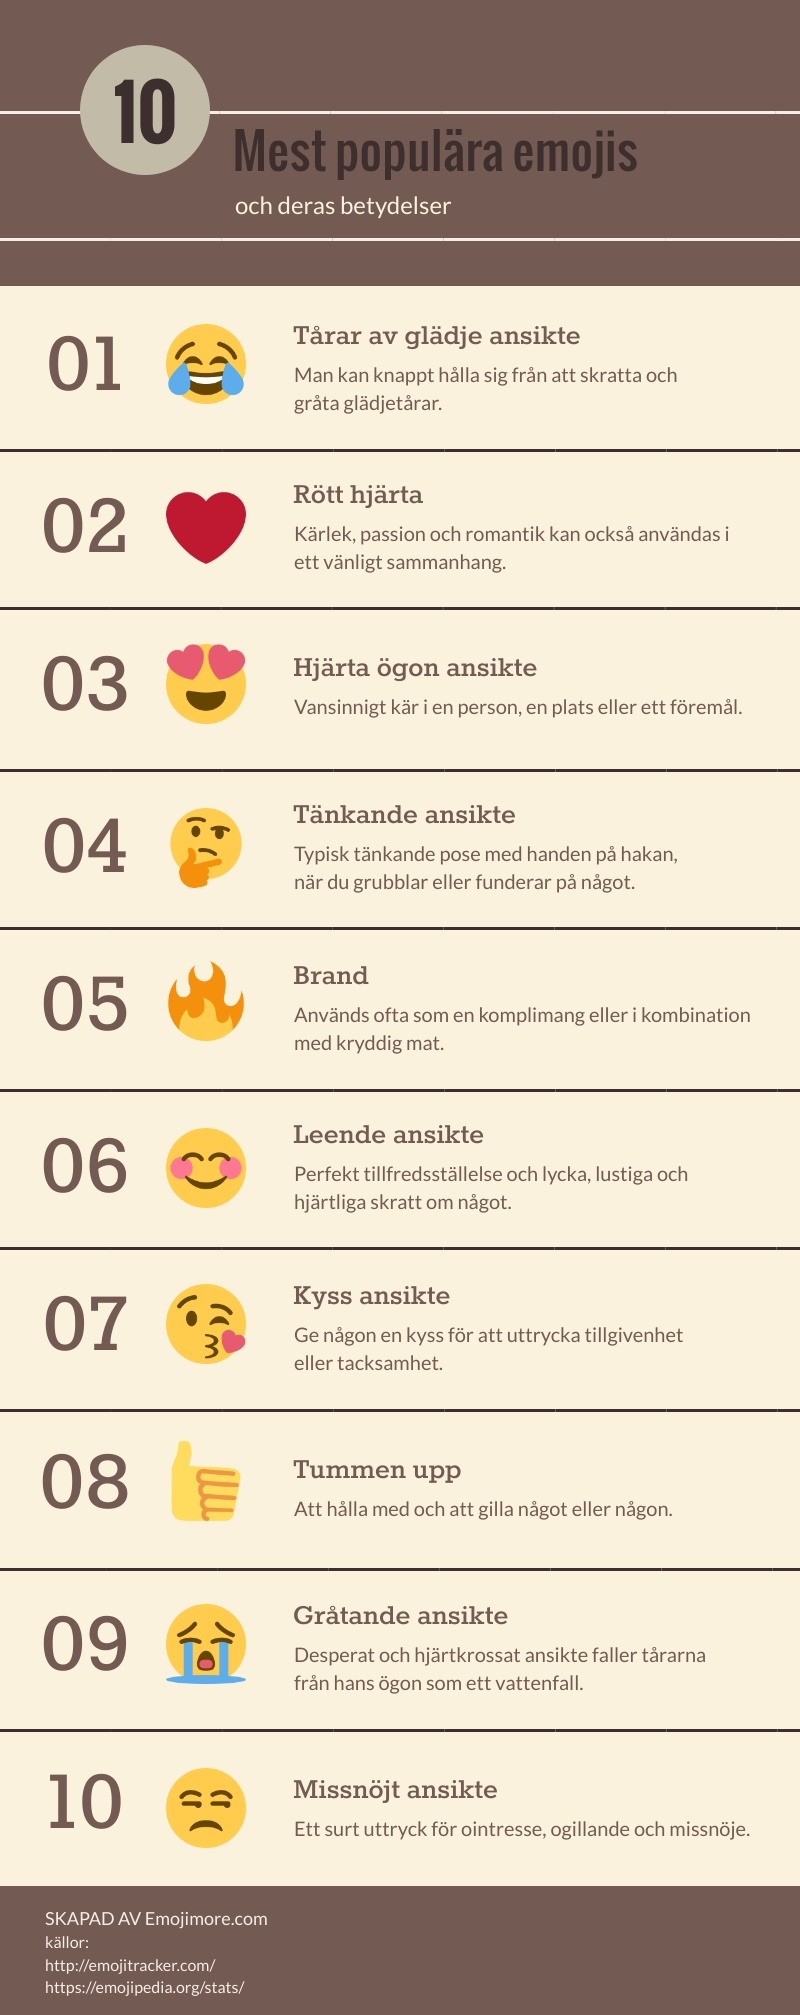 10 Mest populära emojis infografik